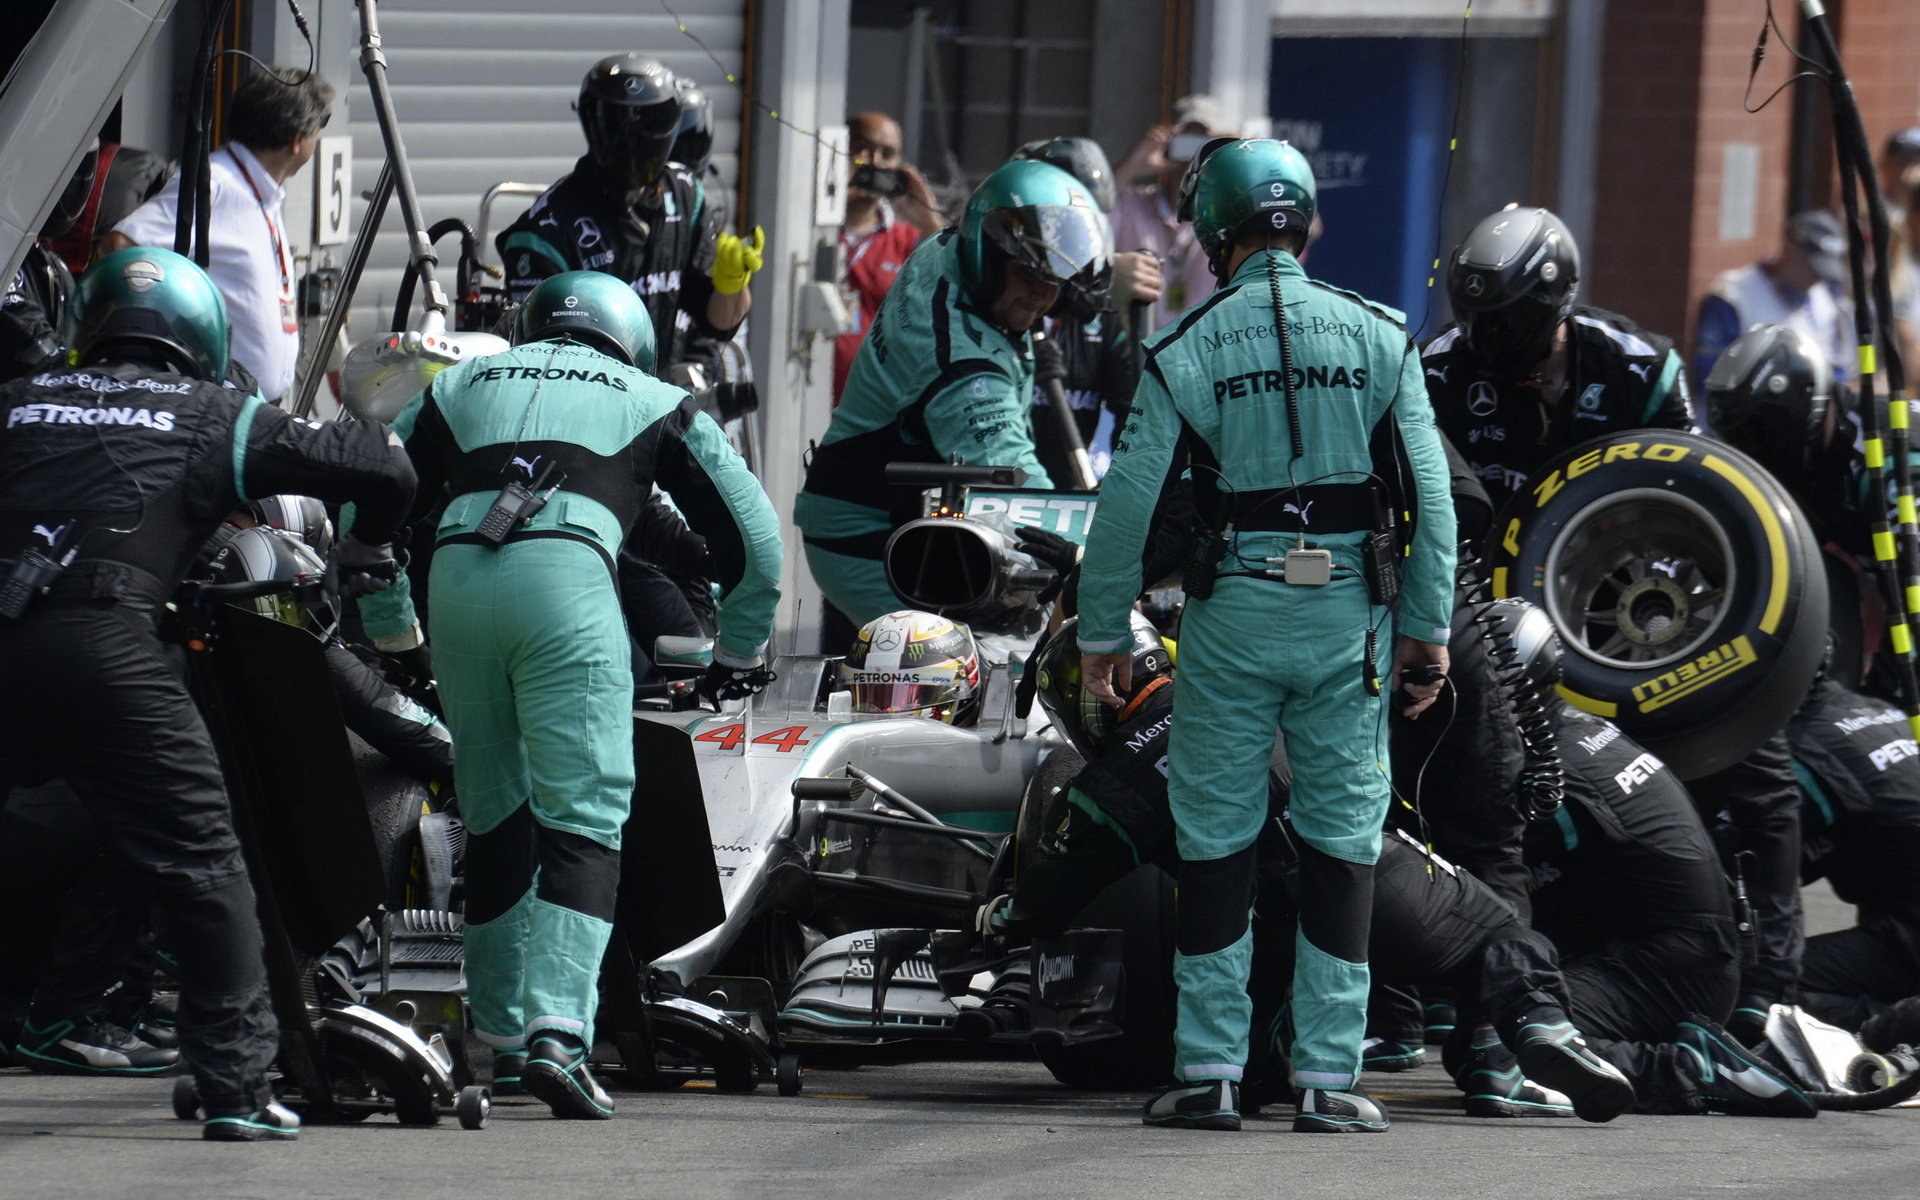 Lewis Hamilton v závodě v Belgii